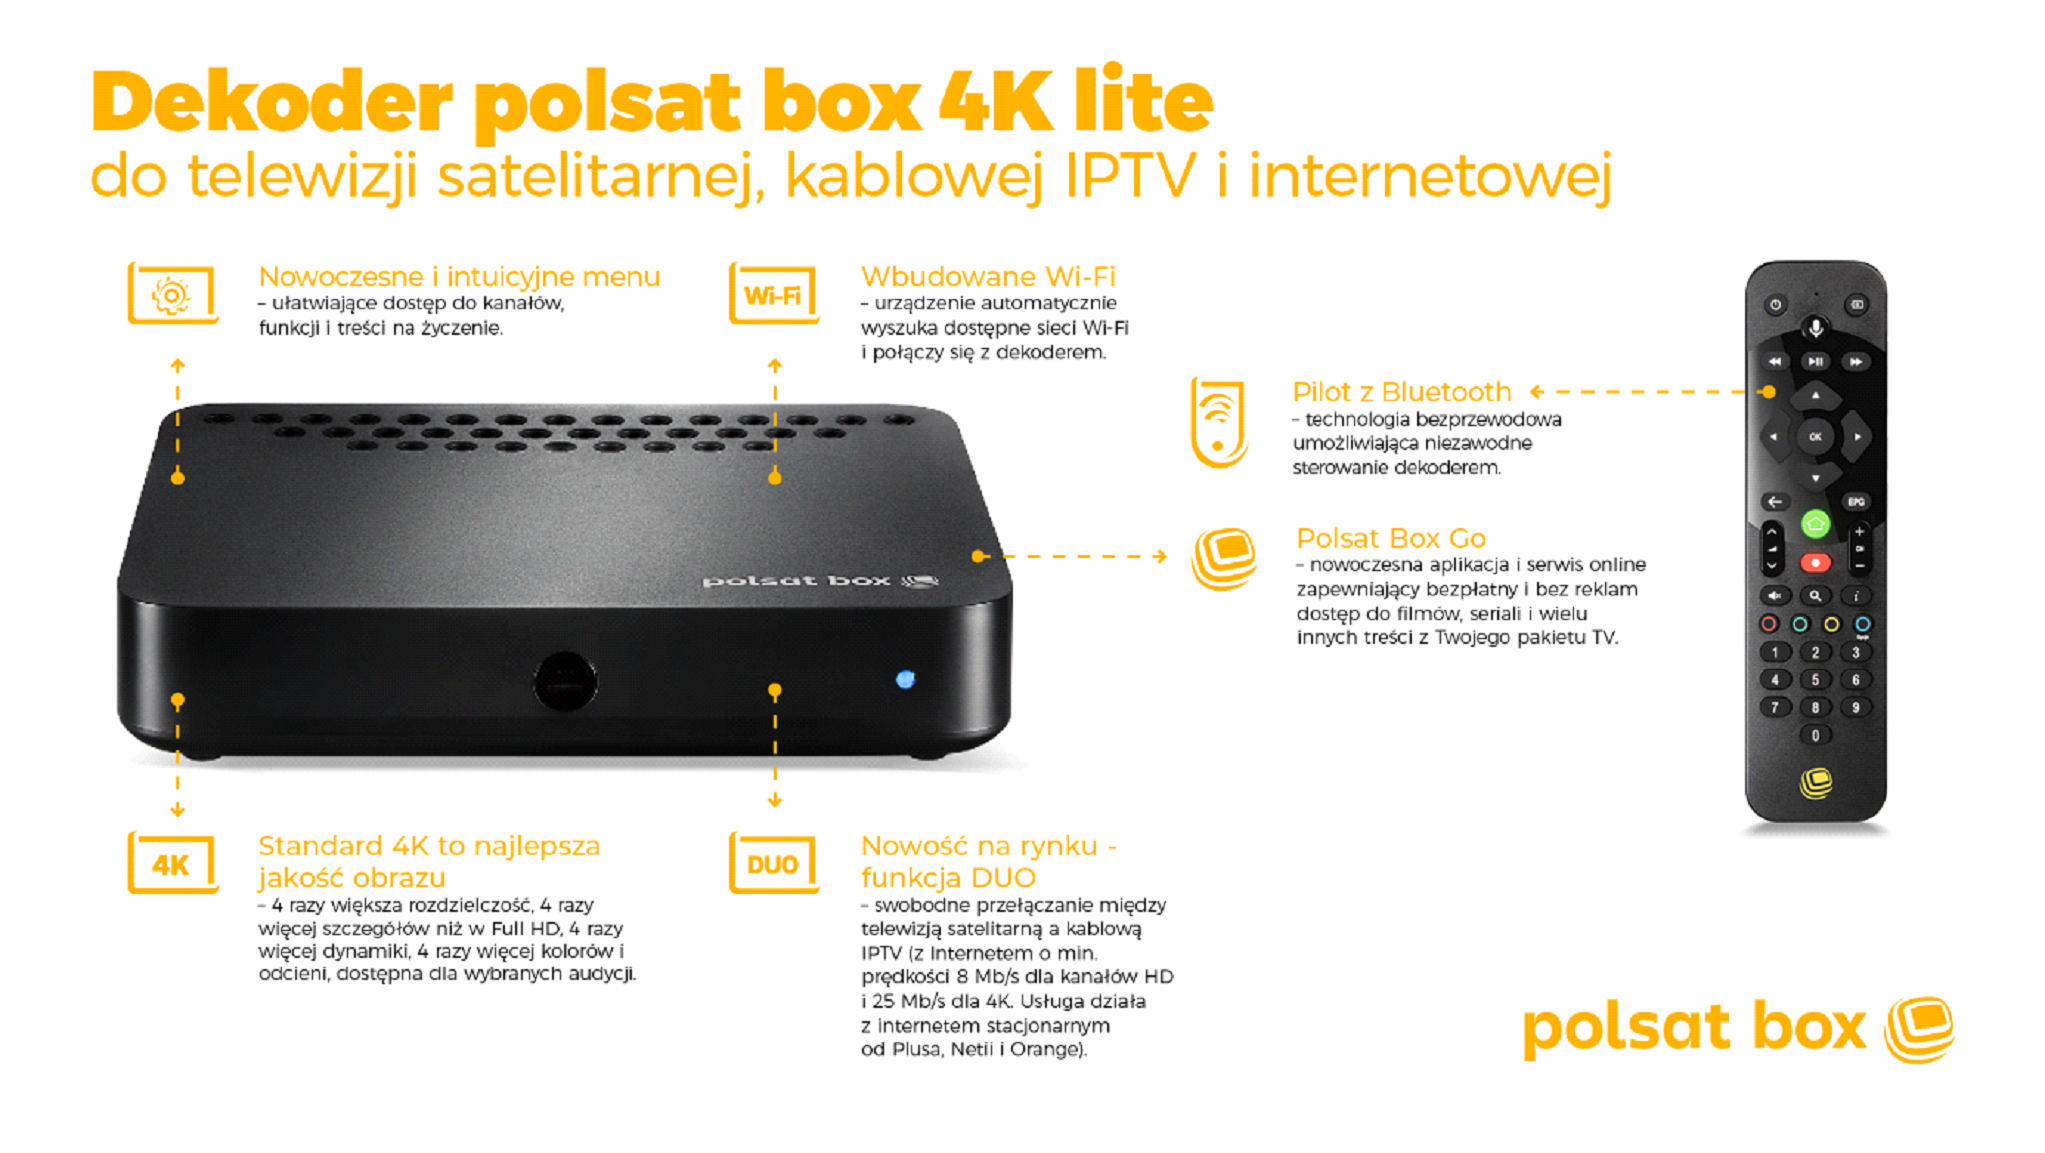 Dekodery Polsat Box w odświeżonej formie po aktualizacji. Sporo zmian!